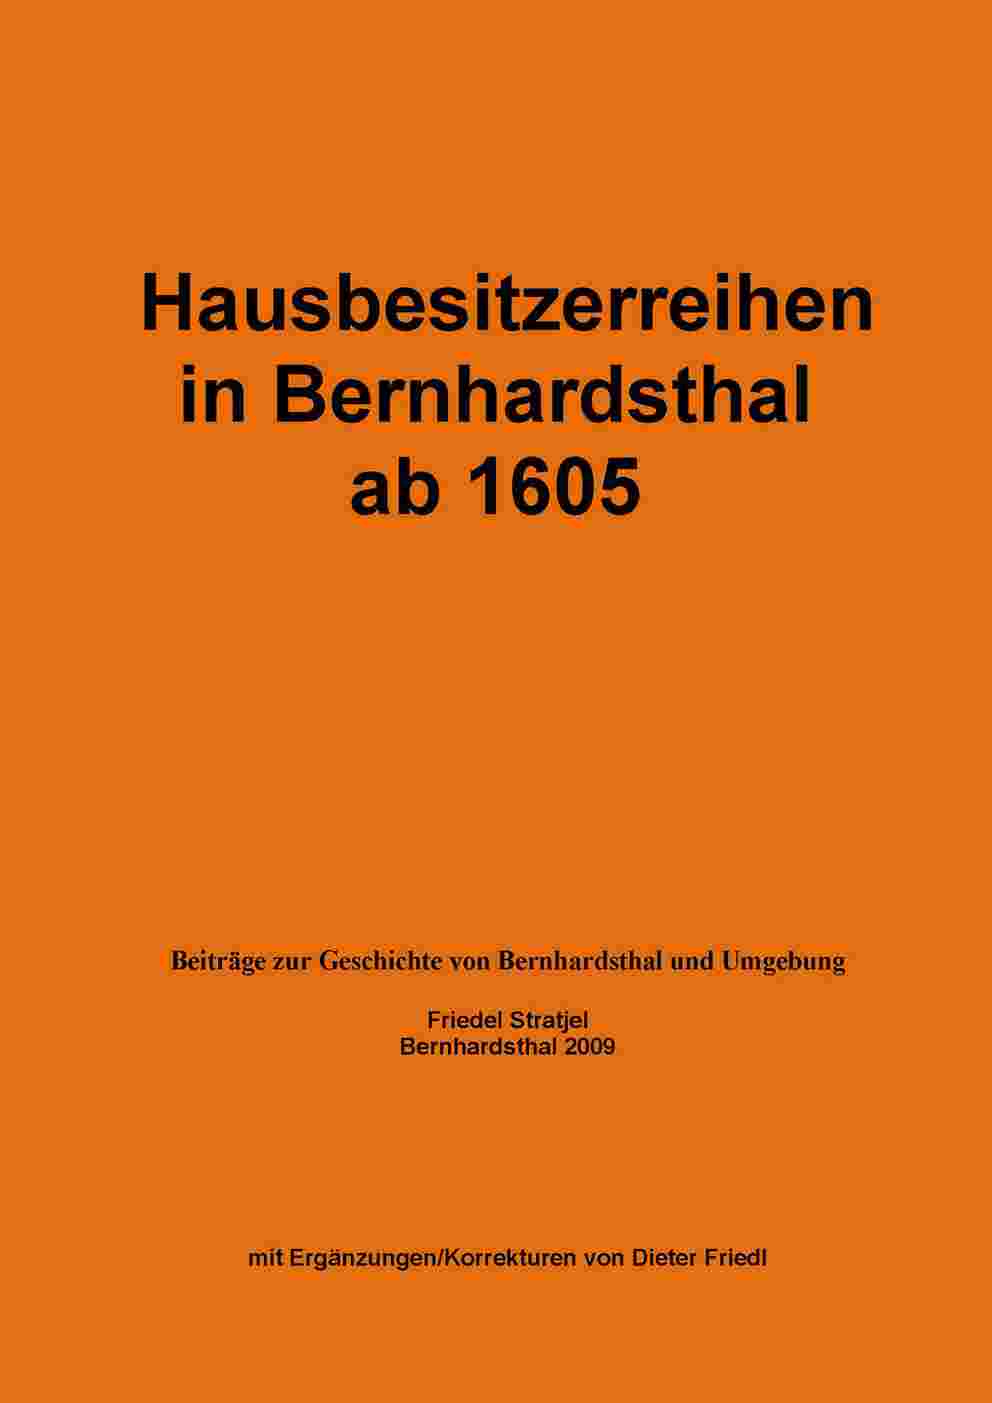 Hausbesitzerreihen in Bernhardsthal ab 1605